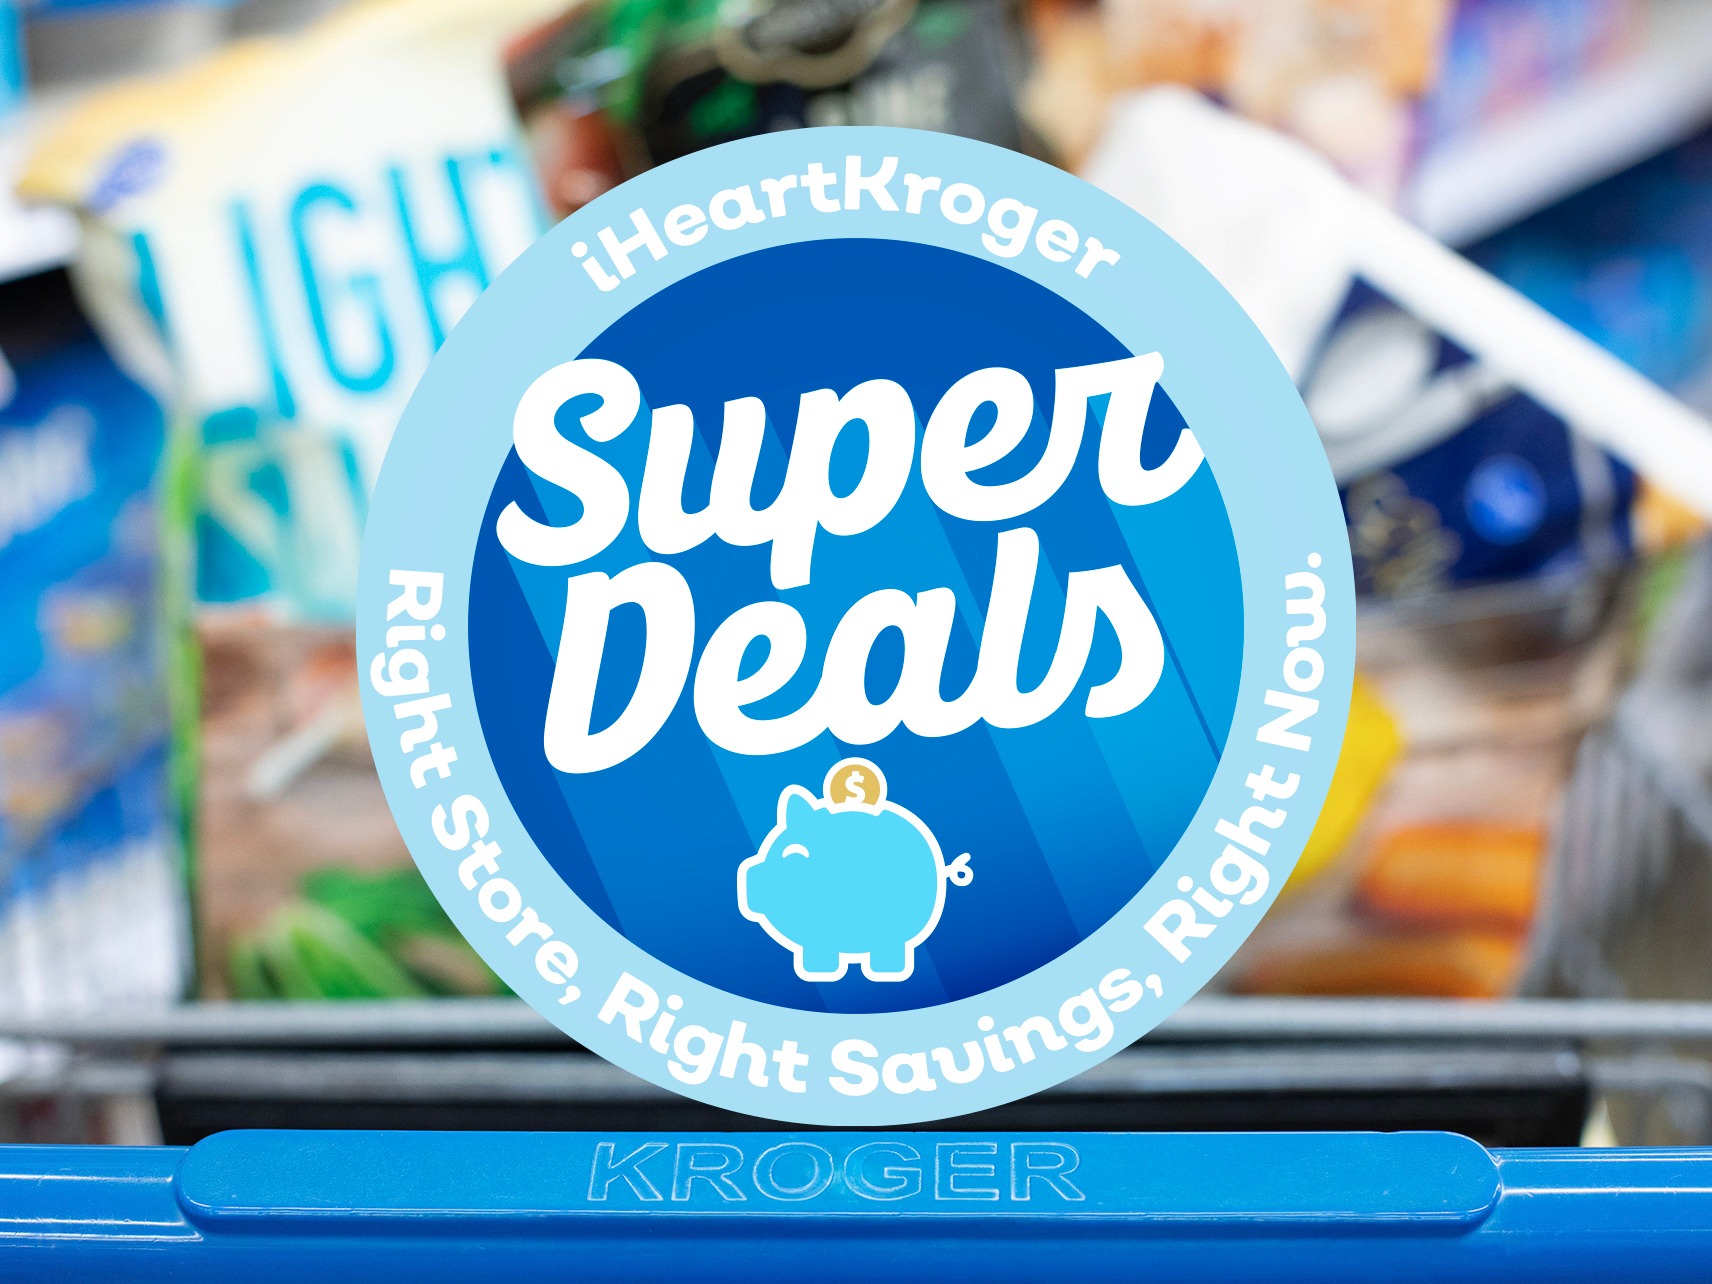 Kroger Super Deals Week Of 8/23 to 8/29